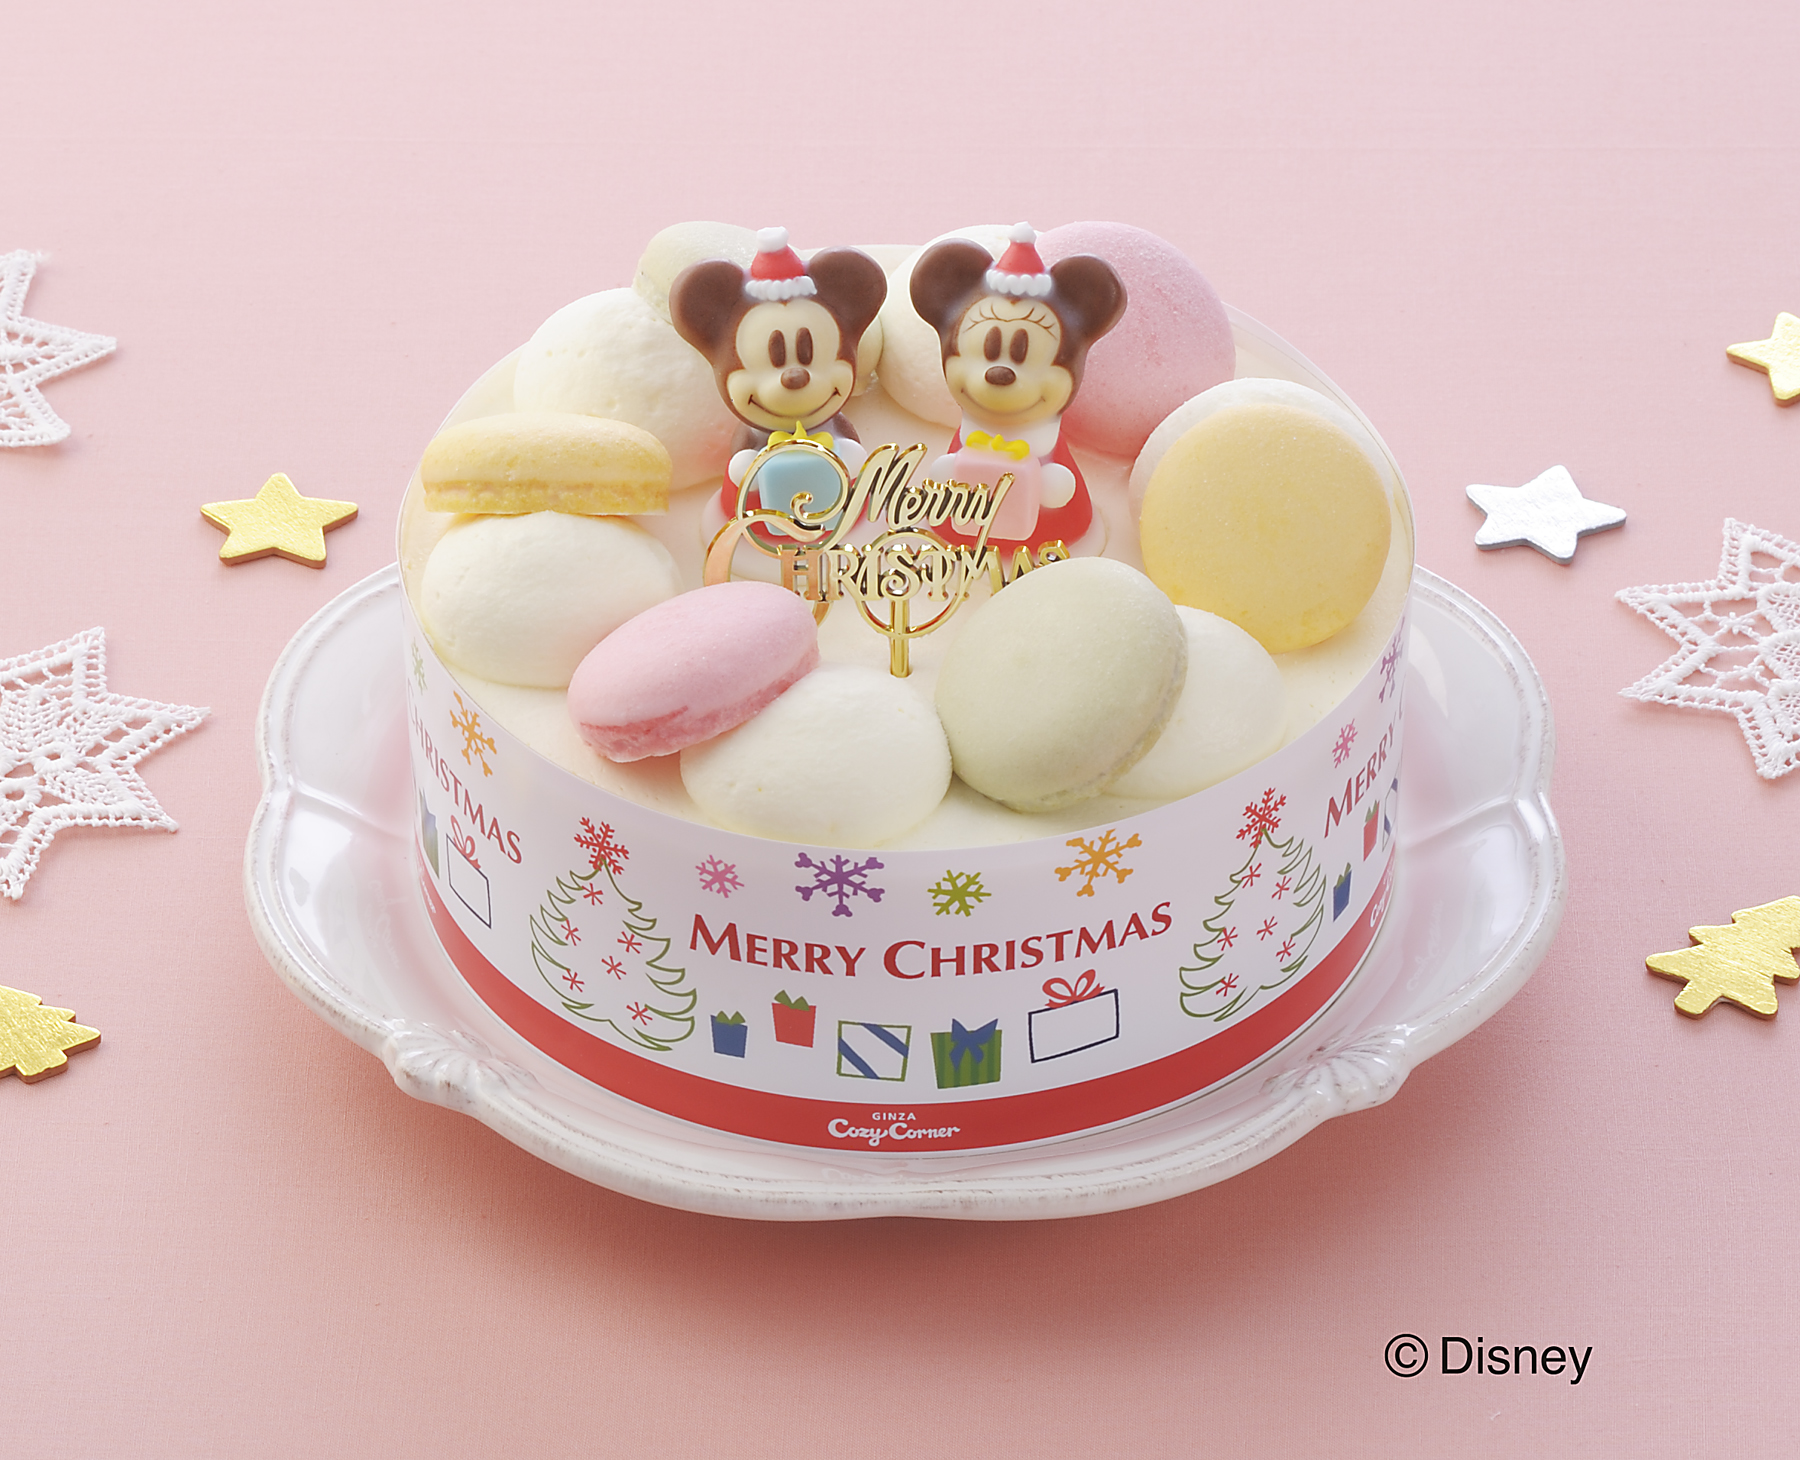 10月1日よりディズニー キャラクター デザインのクリスマスケーキ2品の予約受付を開始 株式会社銀座コージーコーナーのプレスリリース